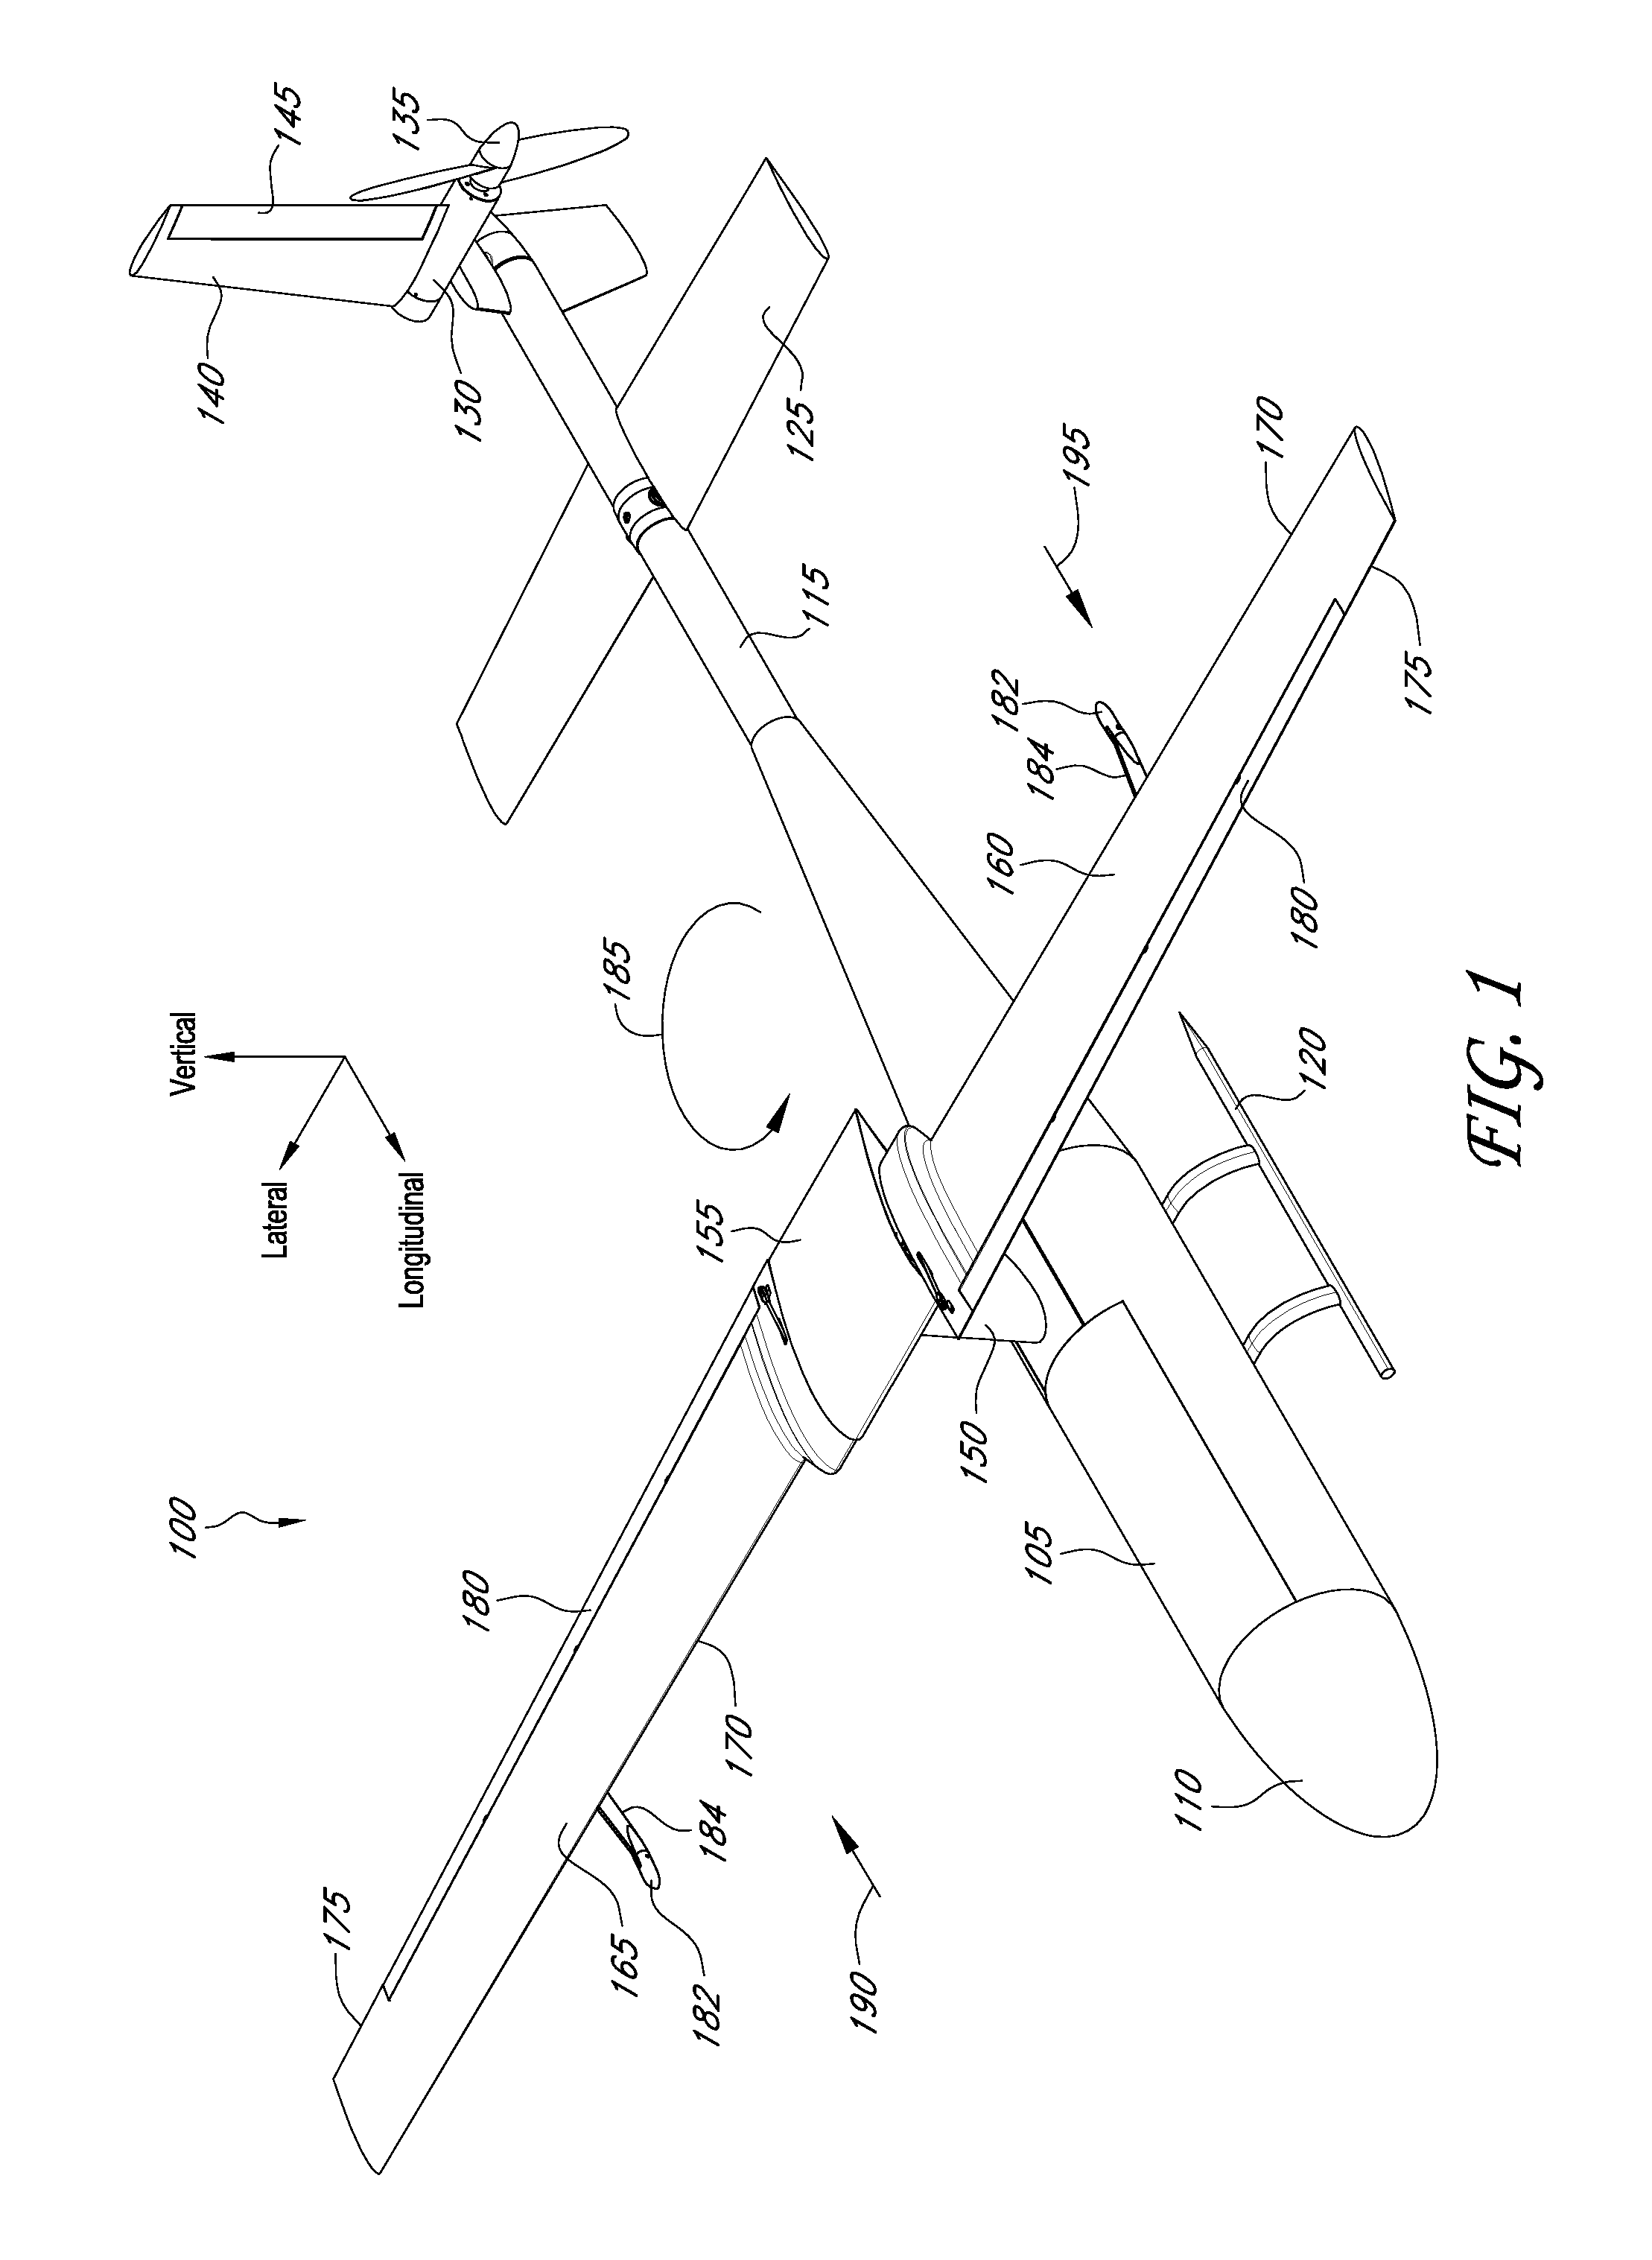 Stop-rotor rotary wing aircraft